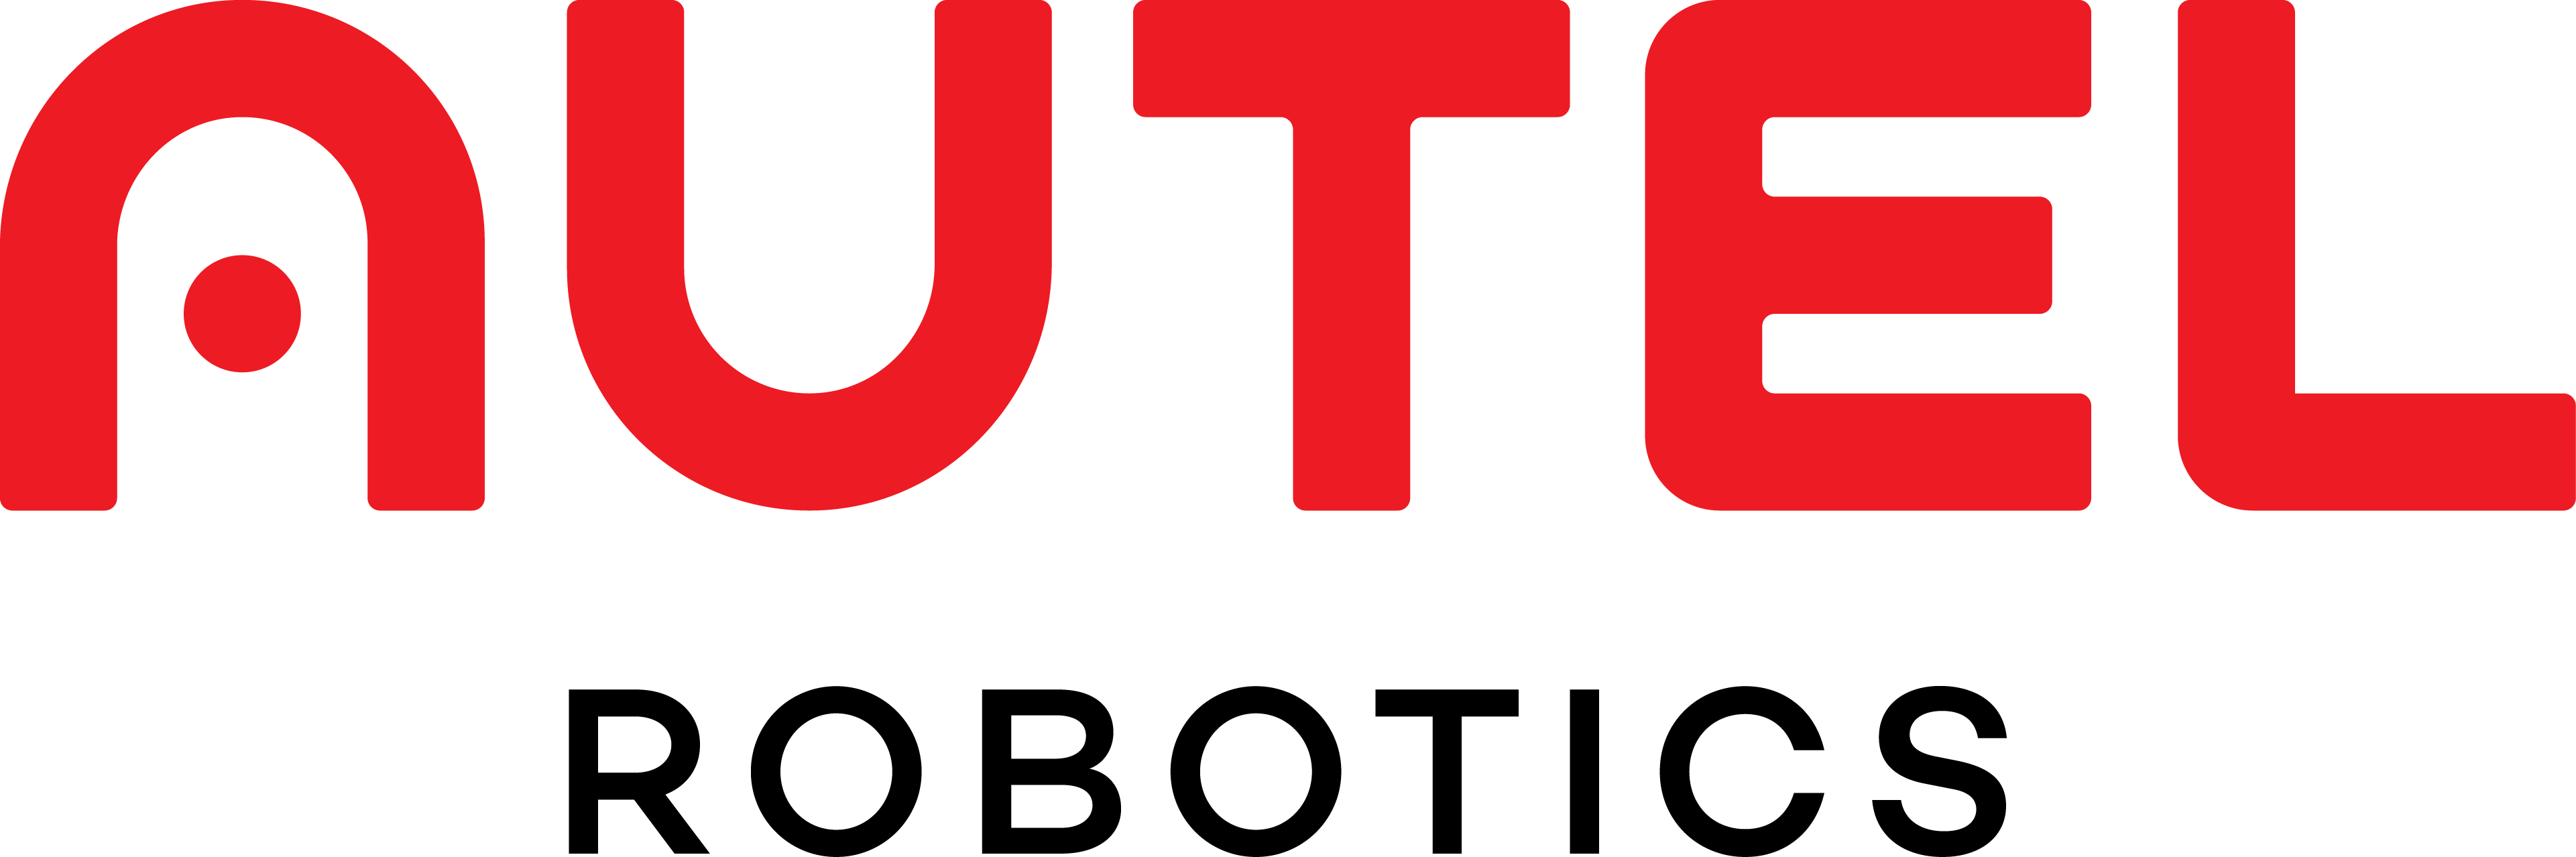 Autel Robotics Official Store  Official Store for Autel Drones